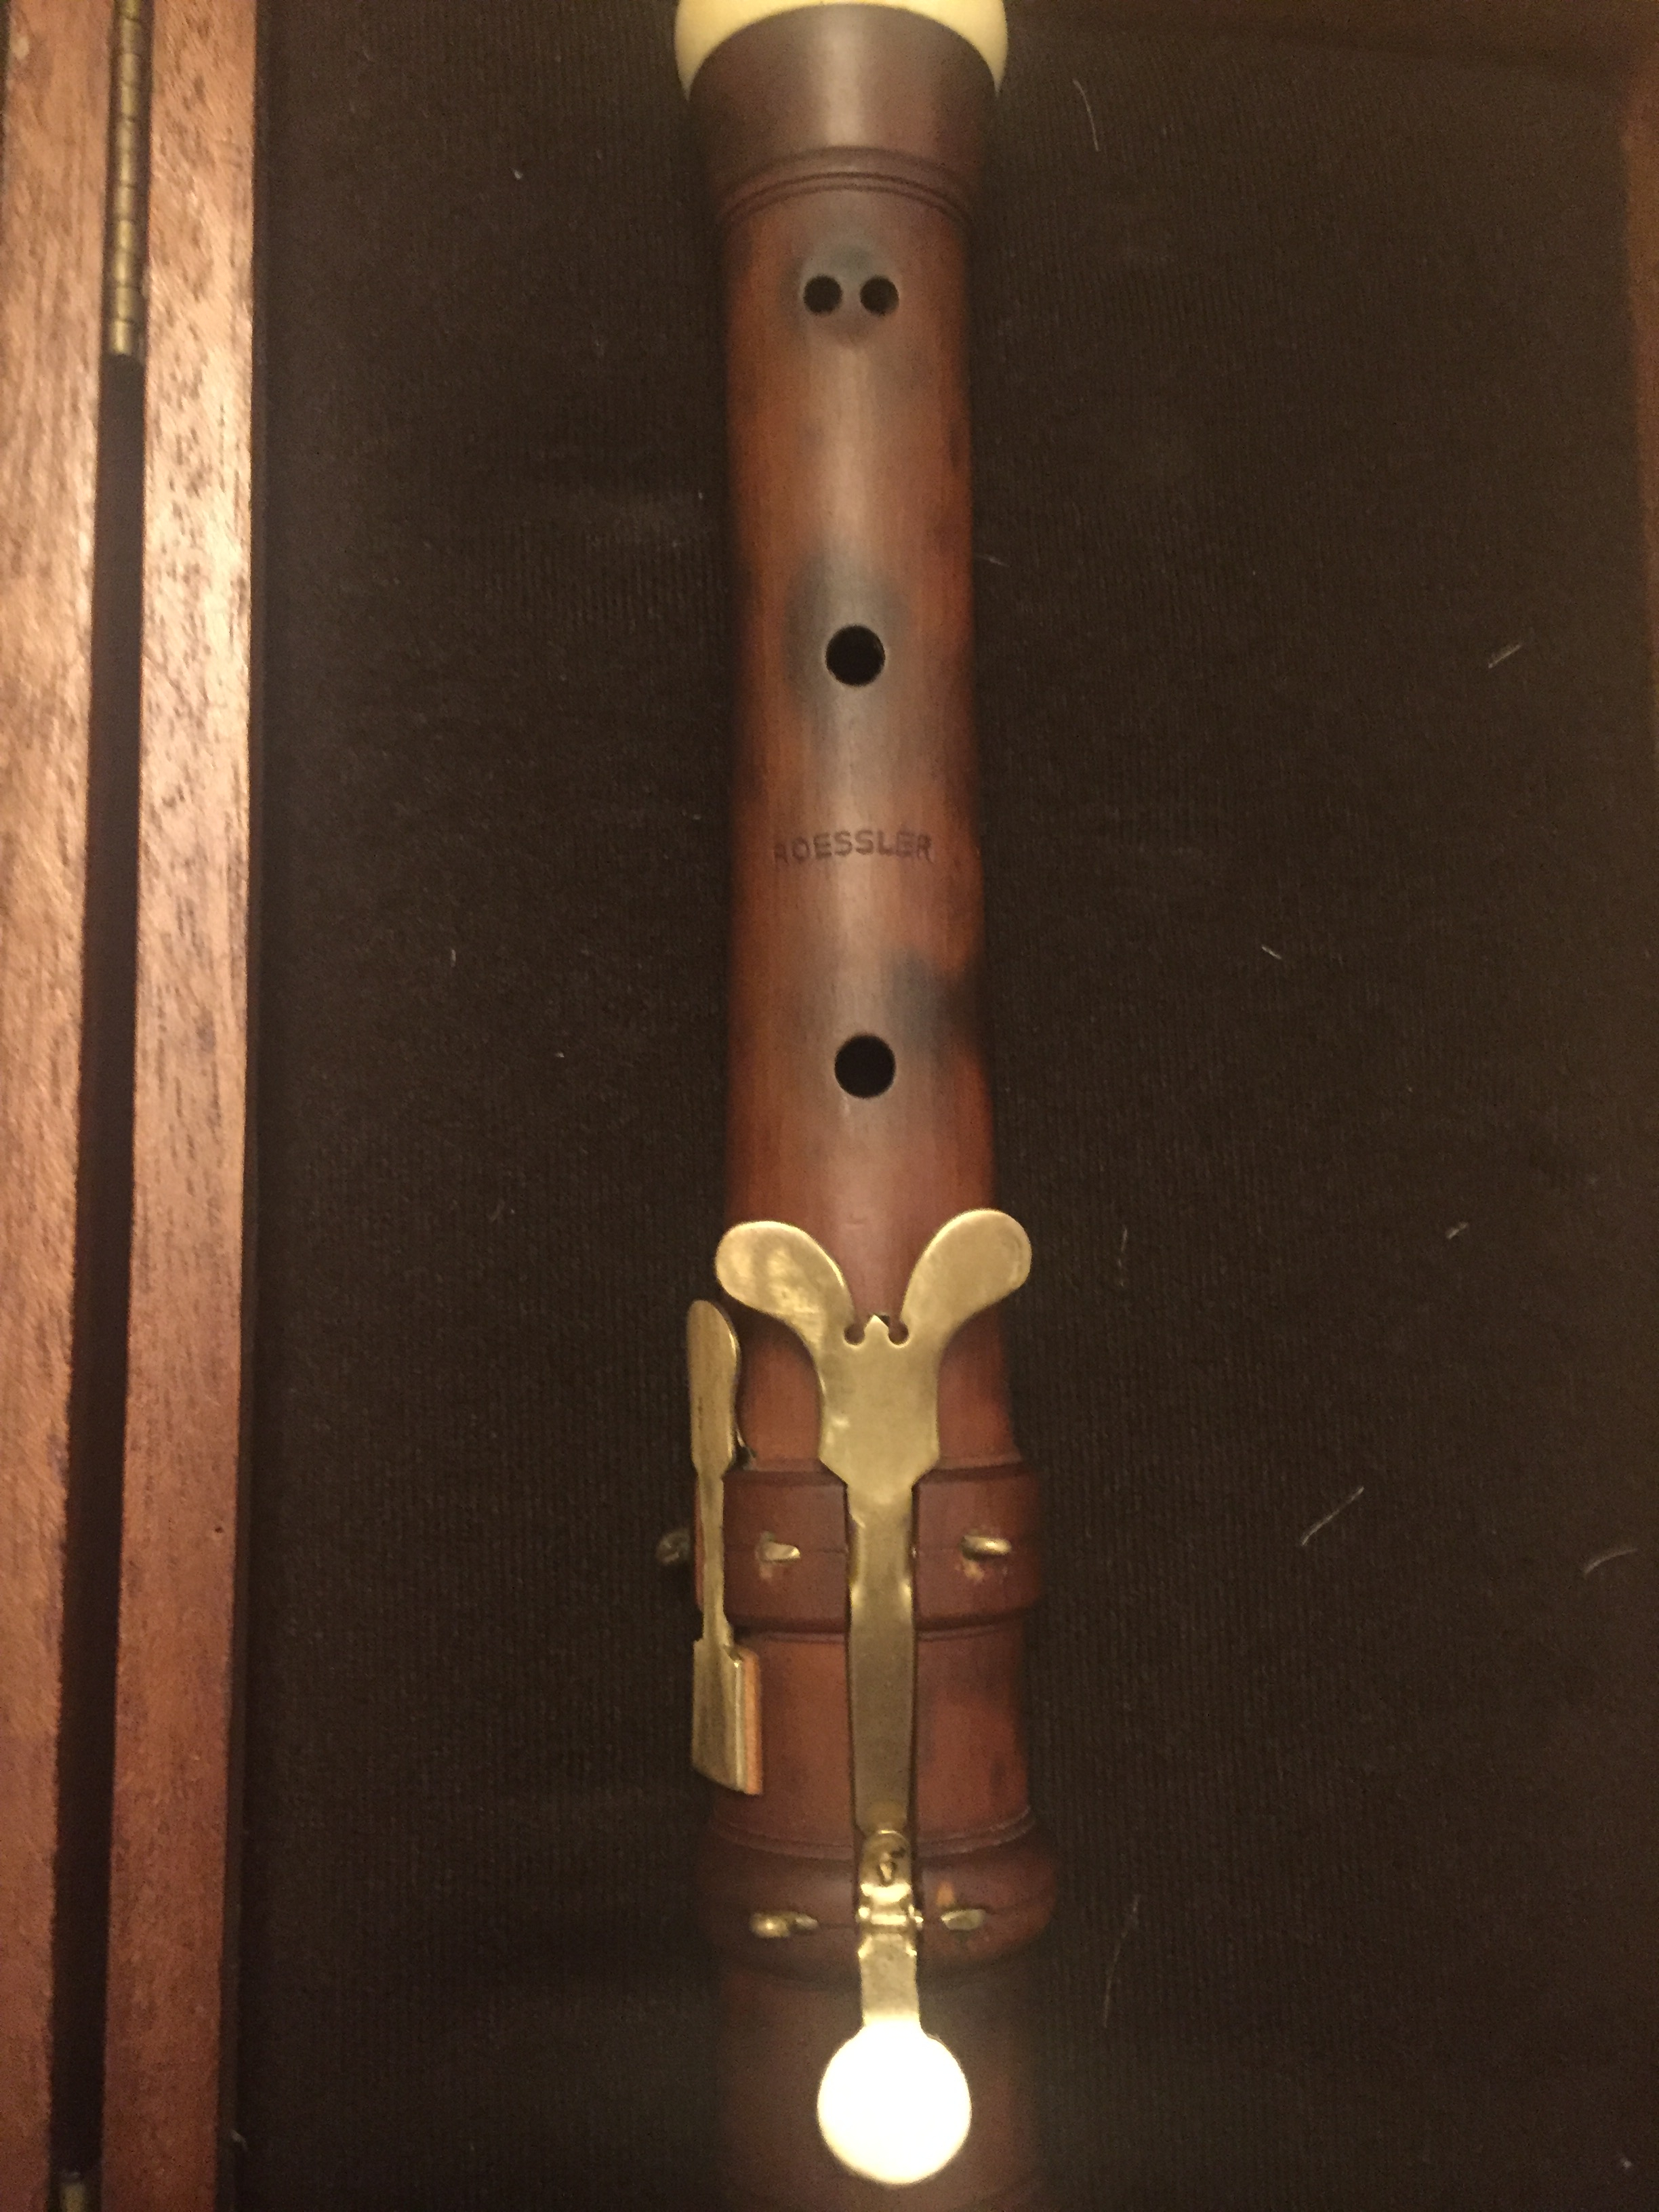 baroque oboe